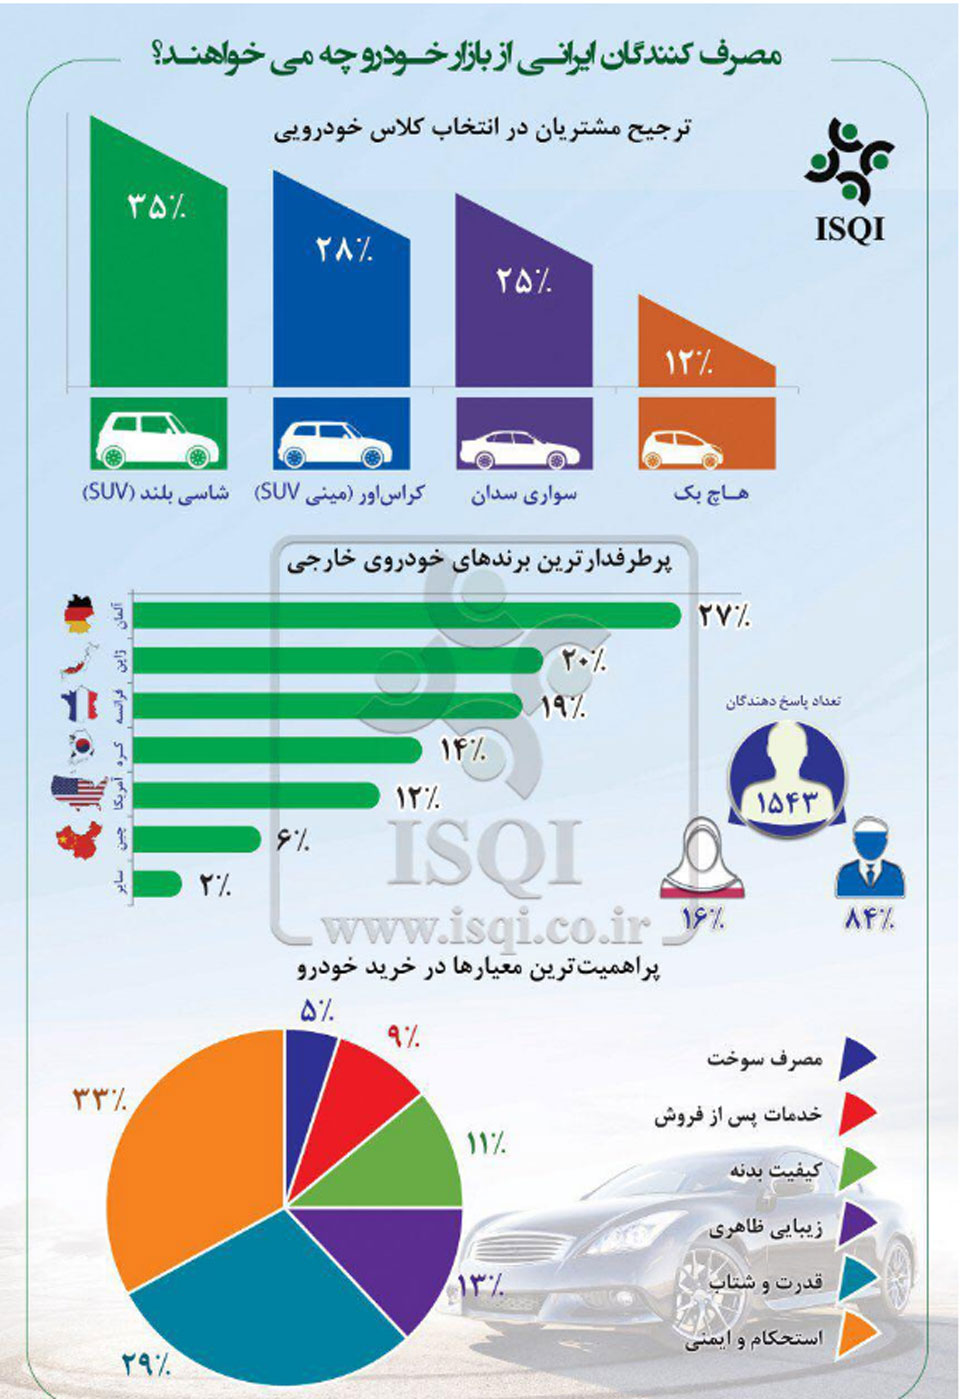 خودروی مورد پسند ایرانیها